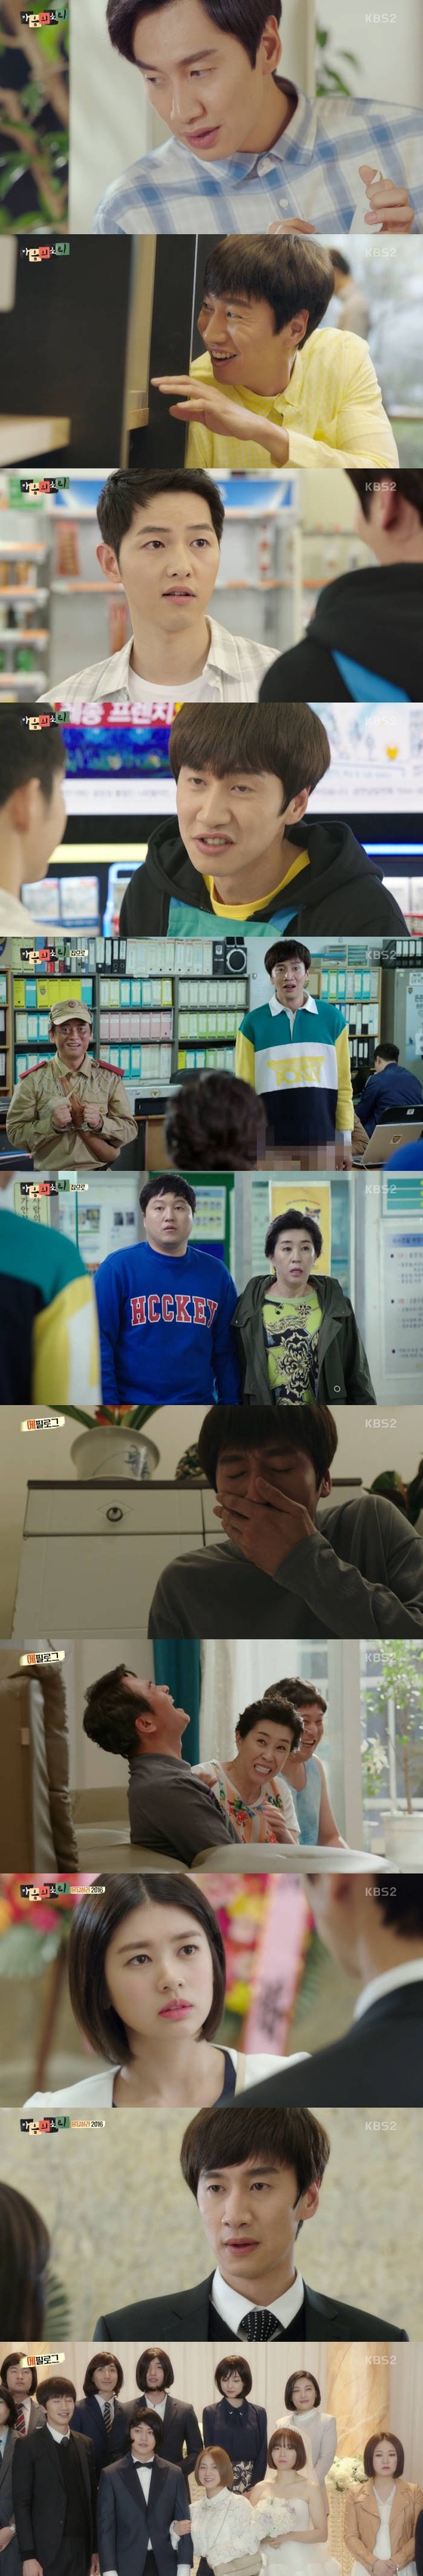 '마음의 소리'가 첫 방송됐다. © News1star / KBS2 '마음의 소리' 캡처